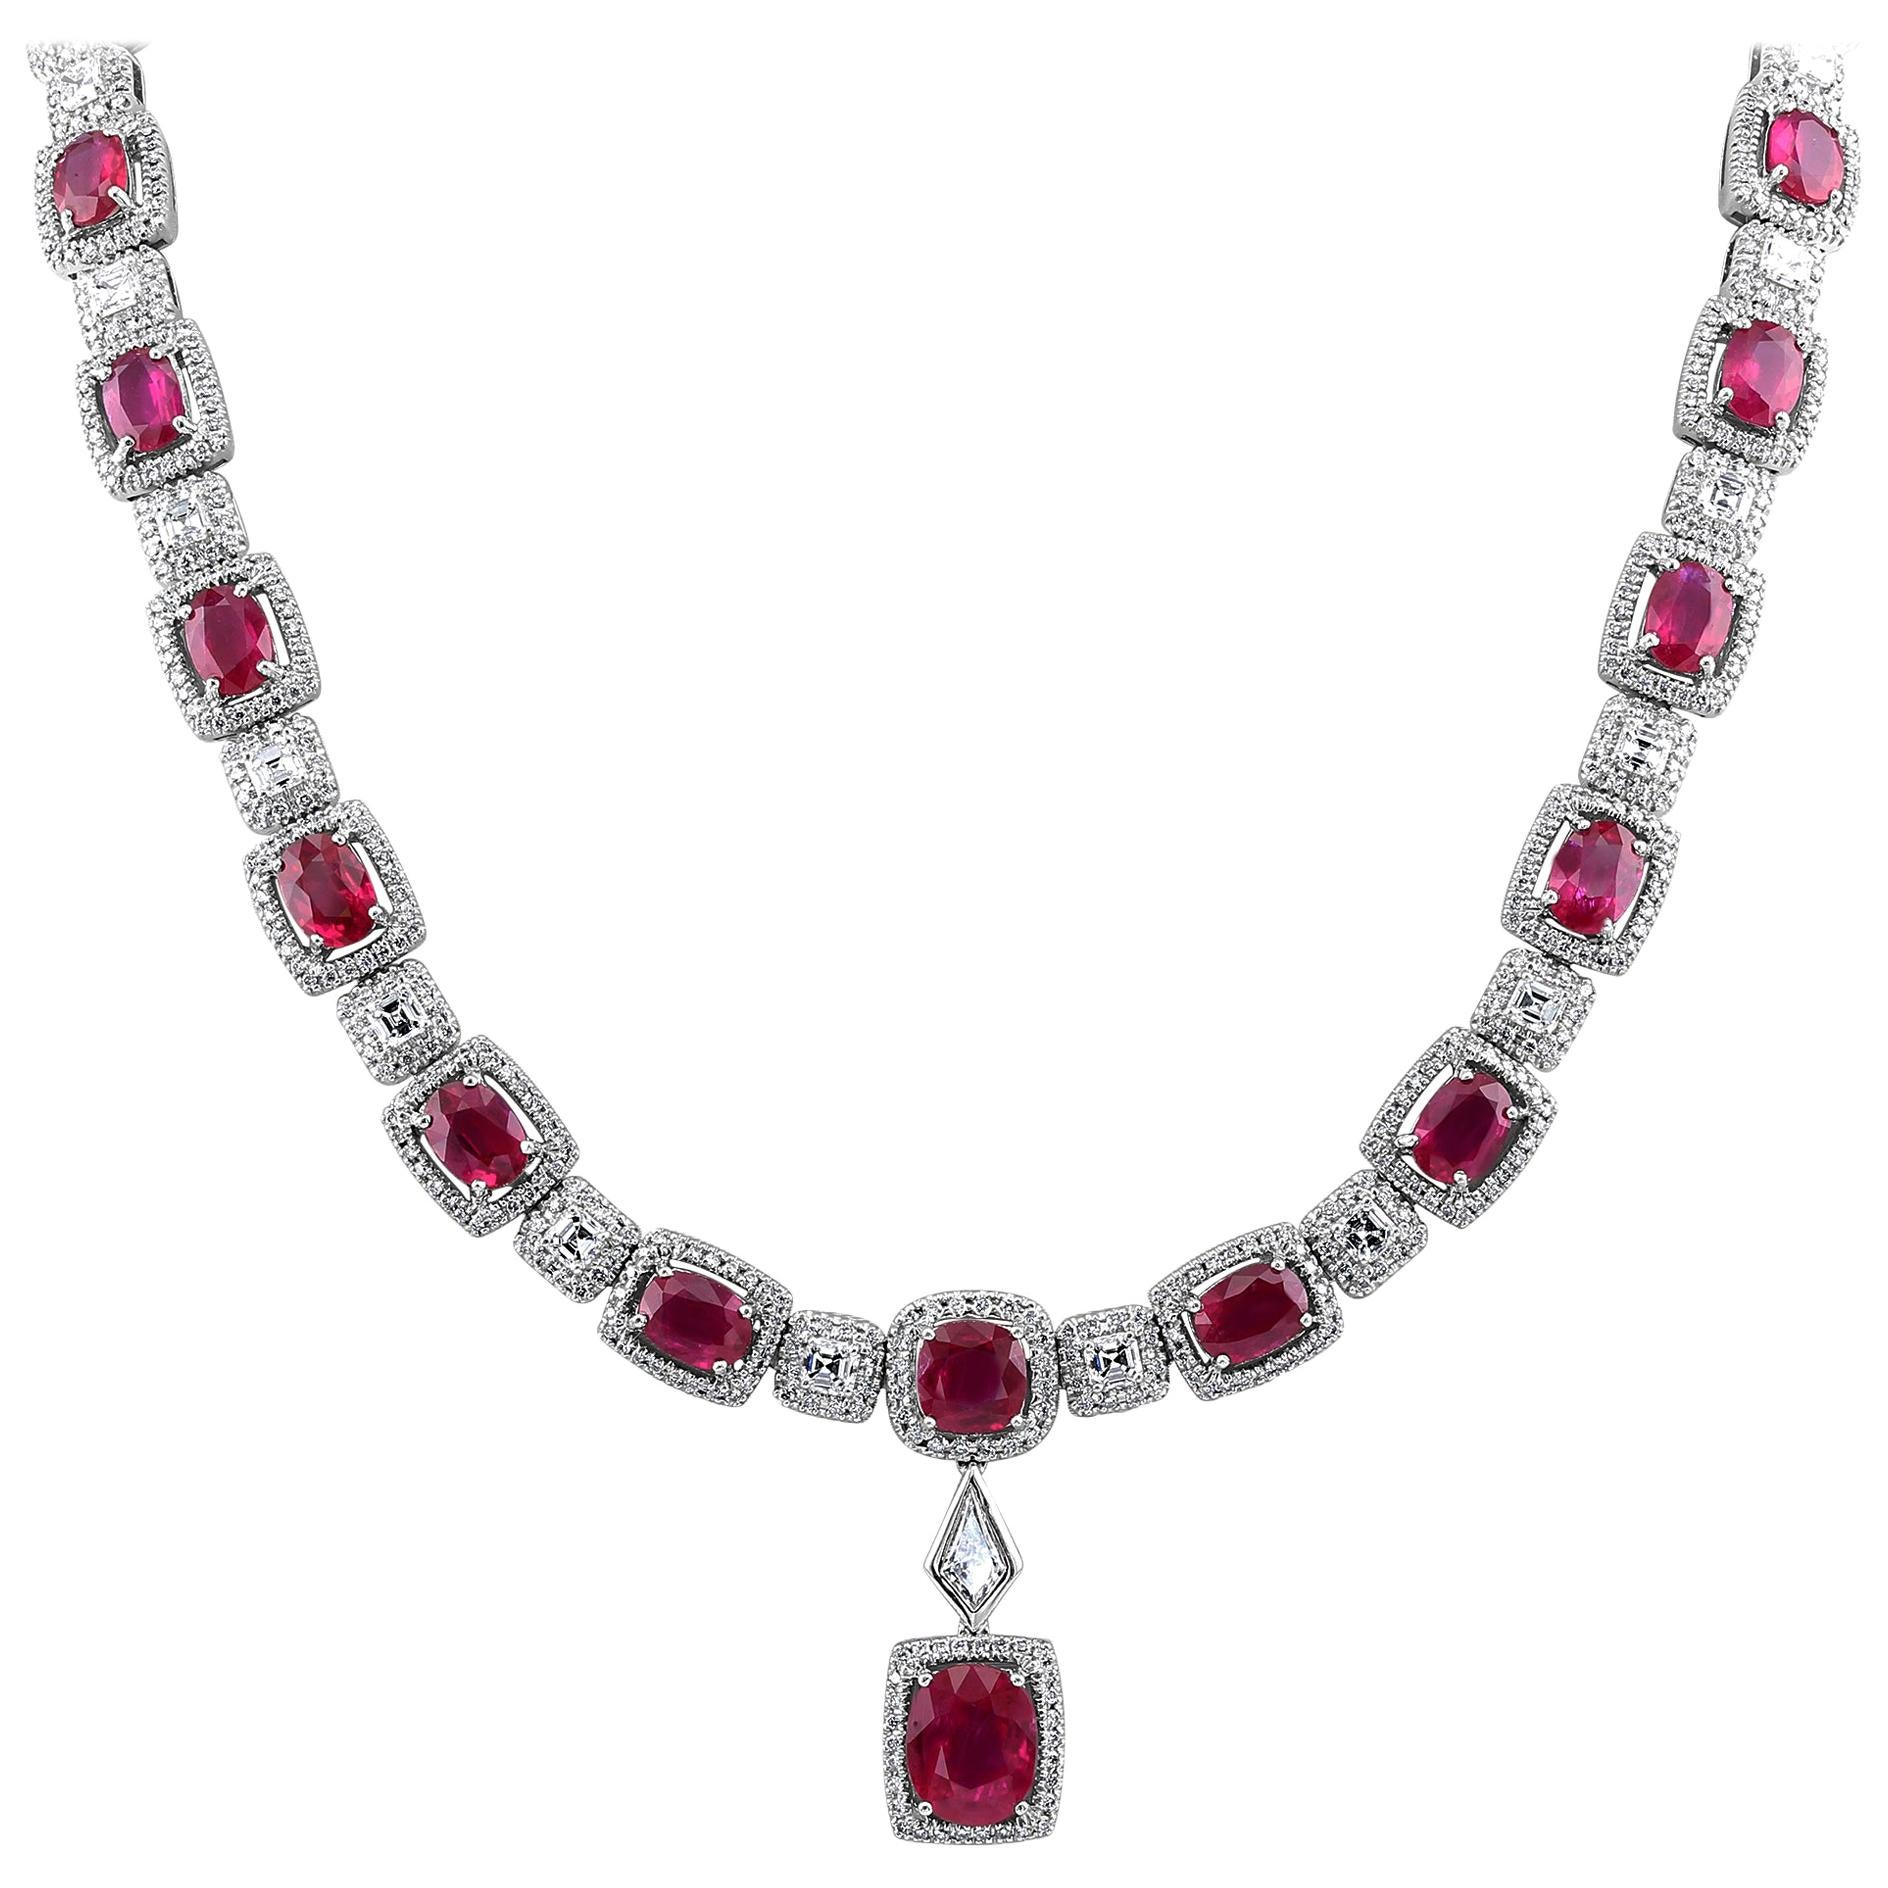 29.36 Carat Ruby Necklace Set in 18 Karat For Sale